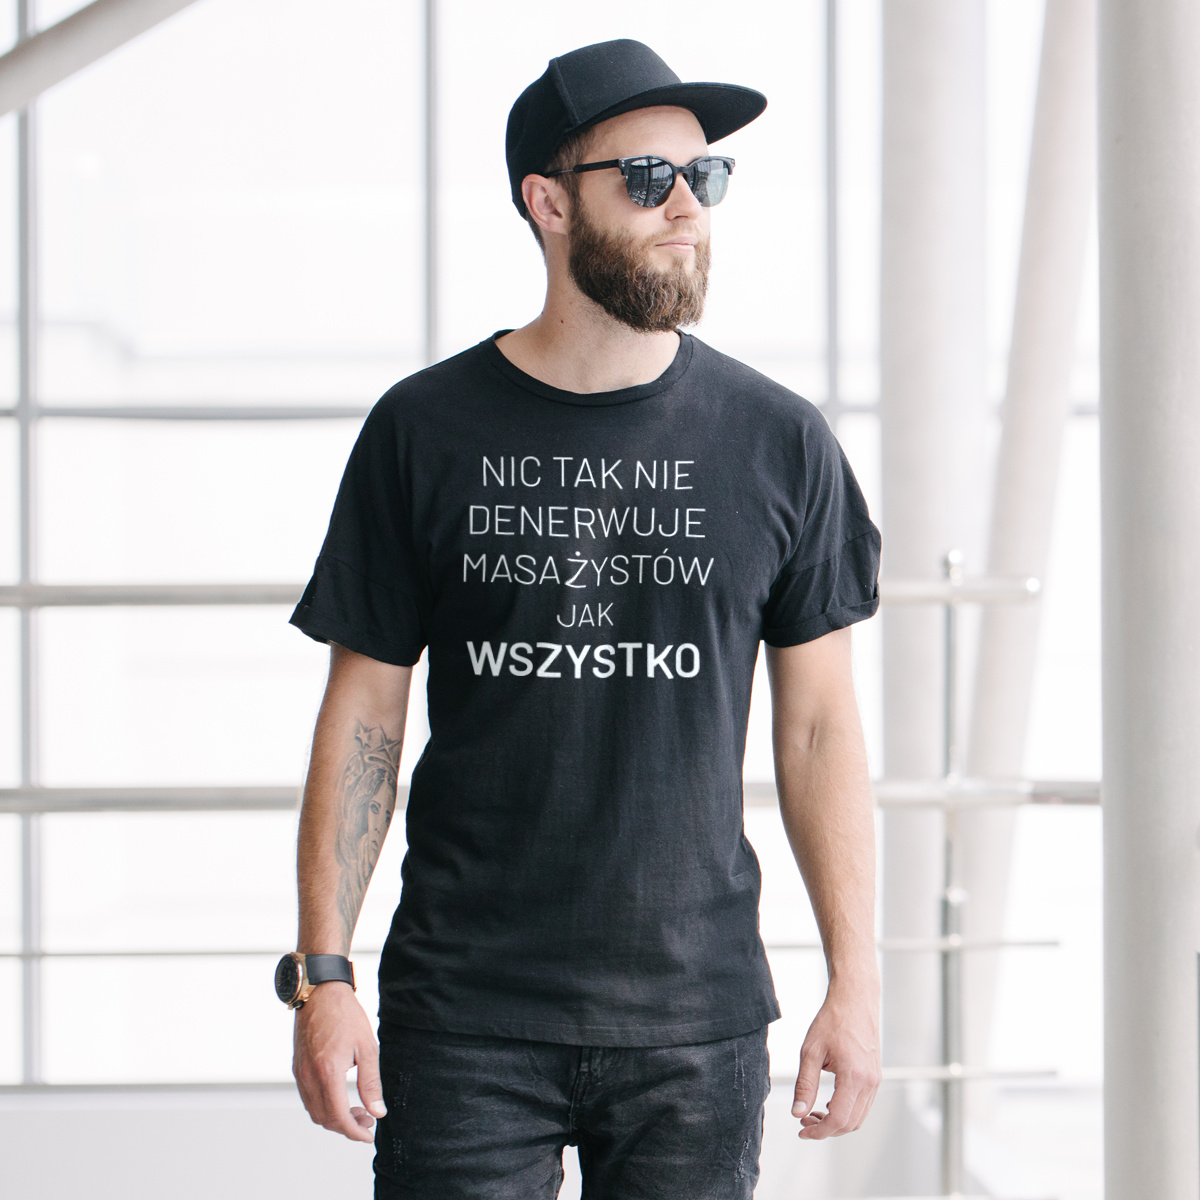 Nic Tak Nie Denerwuje Masażystów Jak Wszystko - Męska Koszulka Czarna